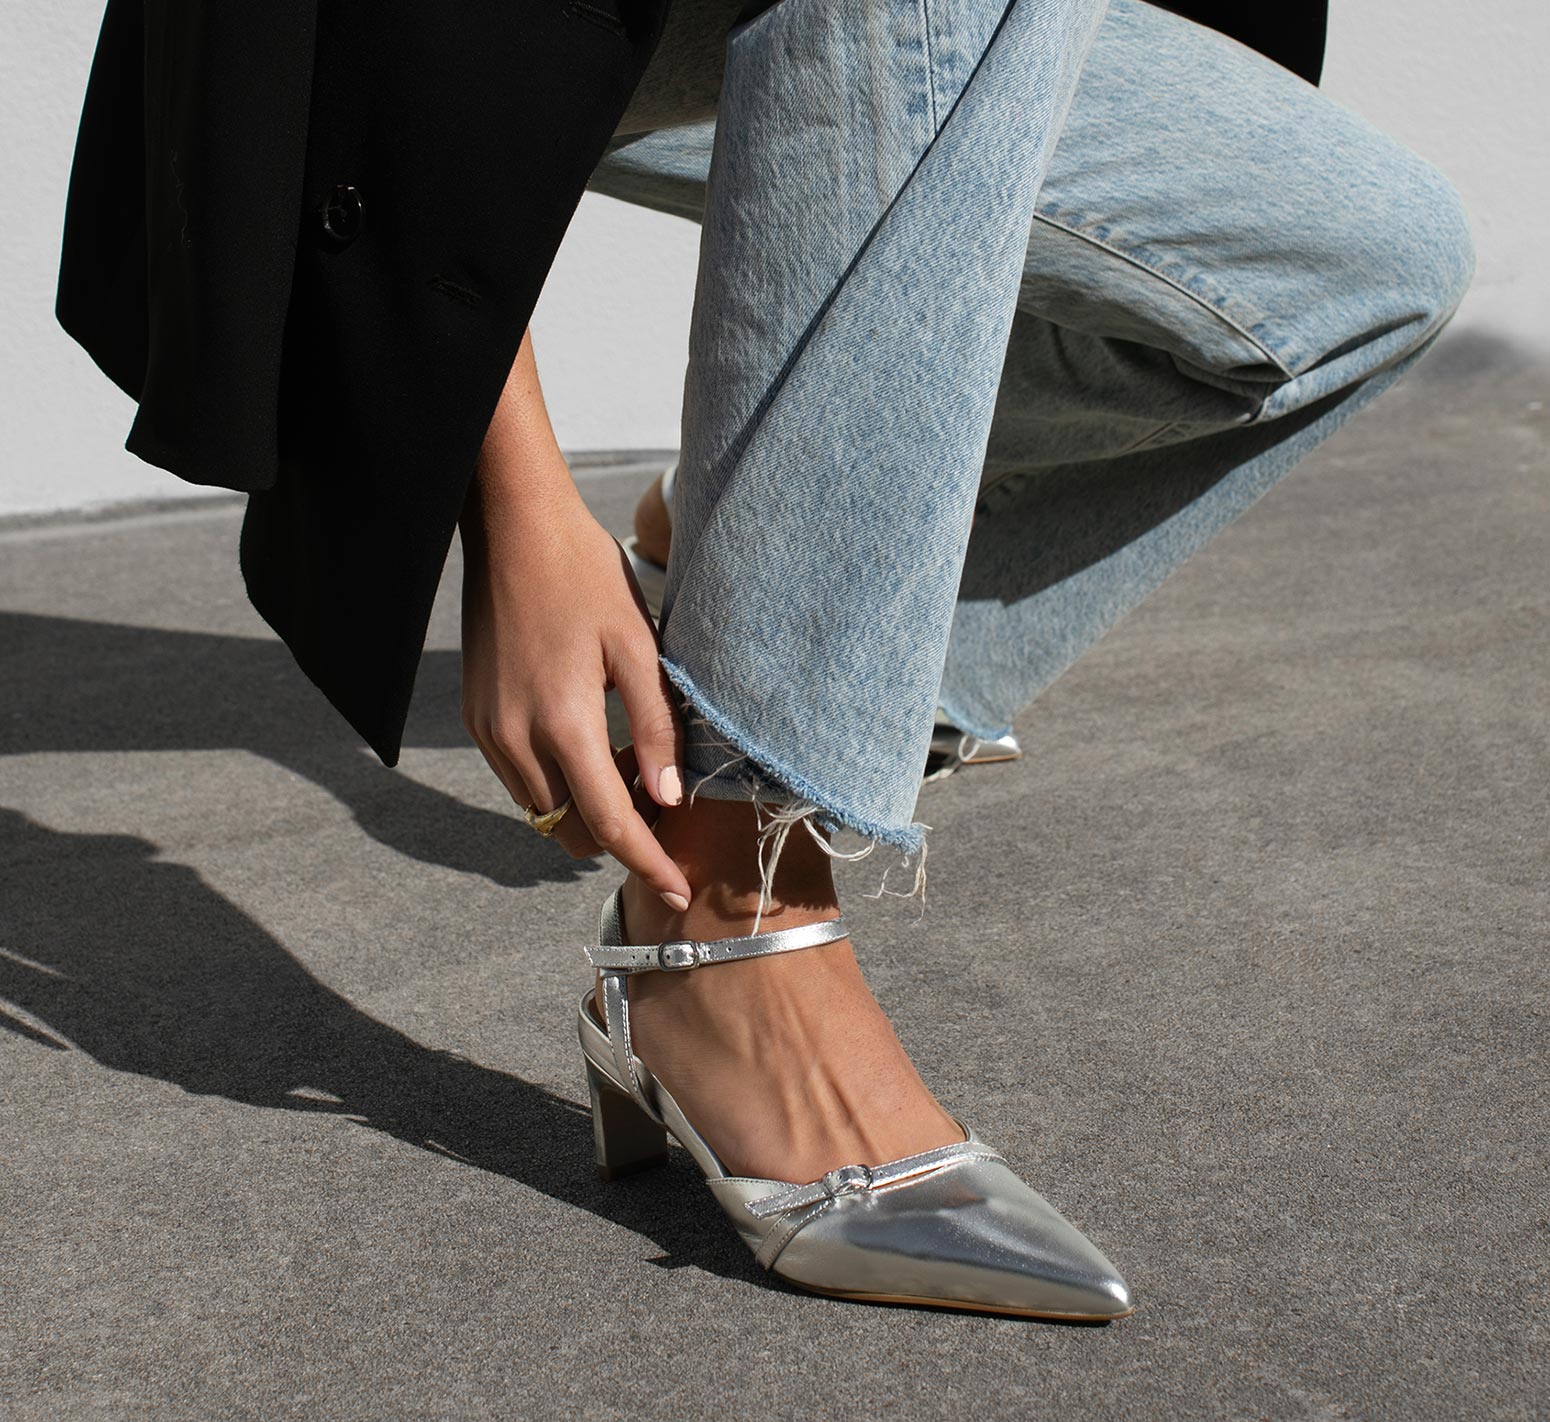 Women's Silver Glitter Low Heel Pumps Shoes | eBay